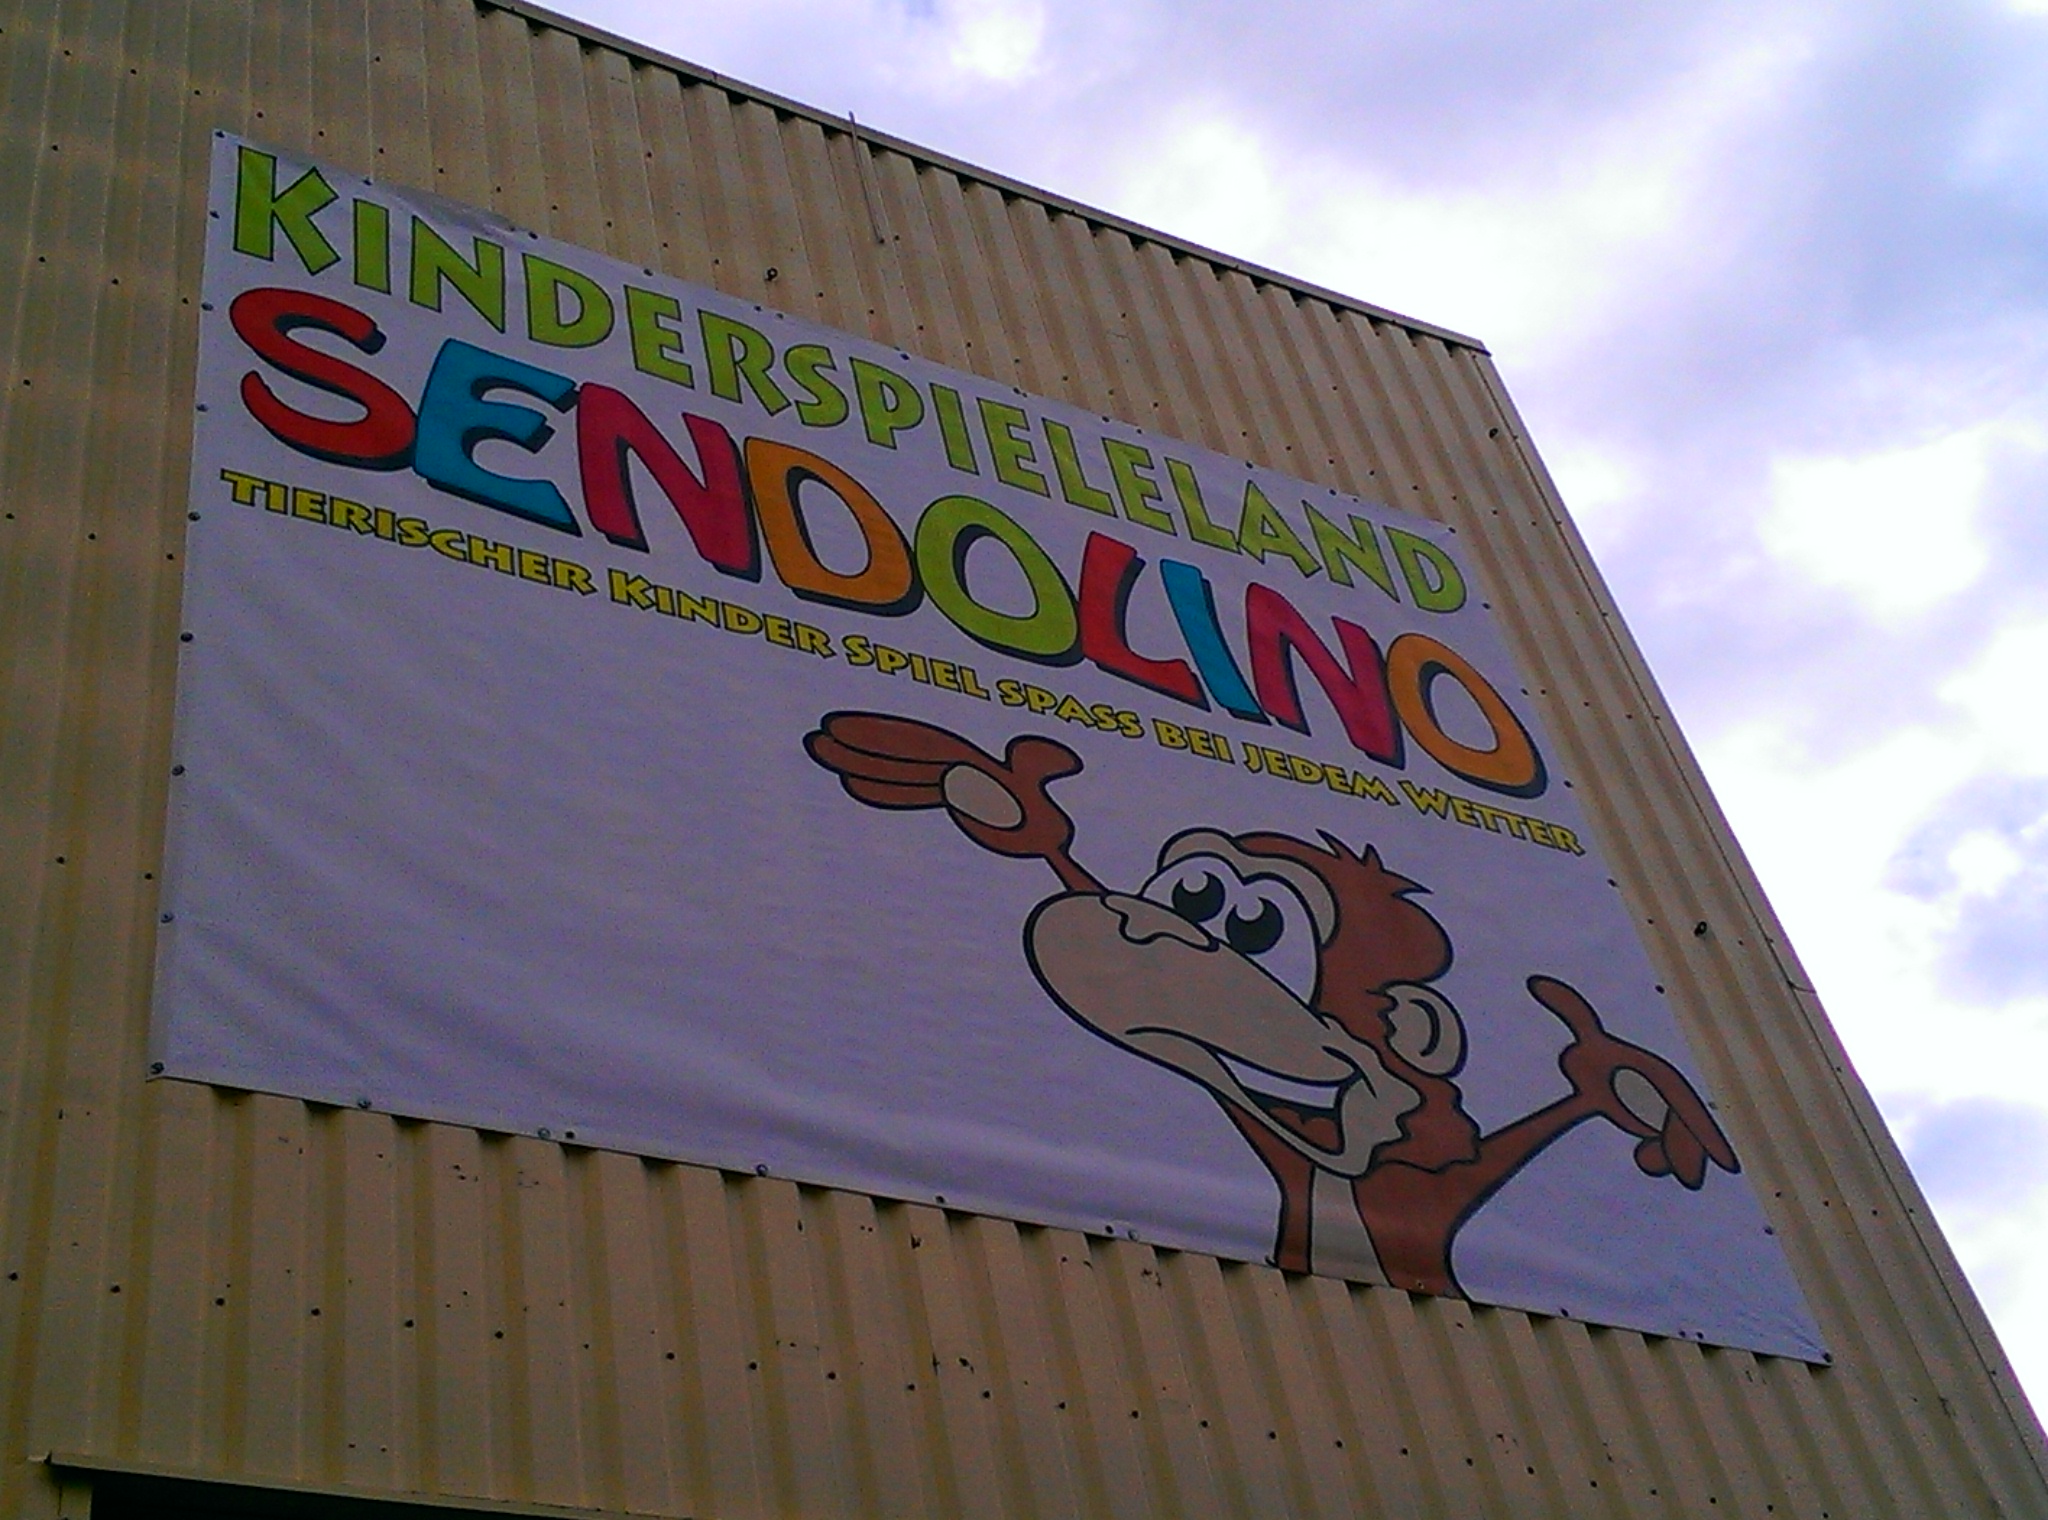 Indoorspielplatz Sendolino Senden